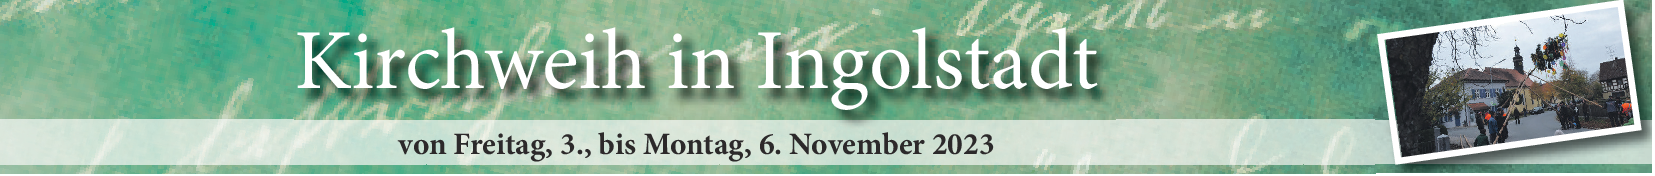 Auf geht es zur Kerwa in Ingolstadt vom 3. bis 6. November